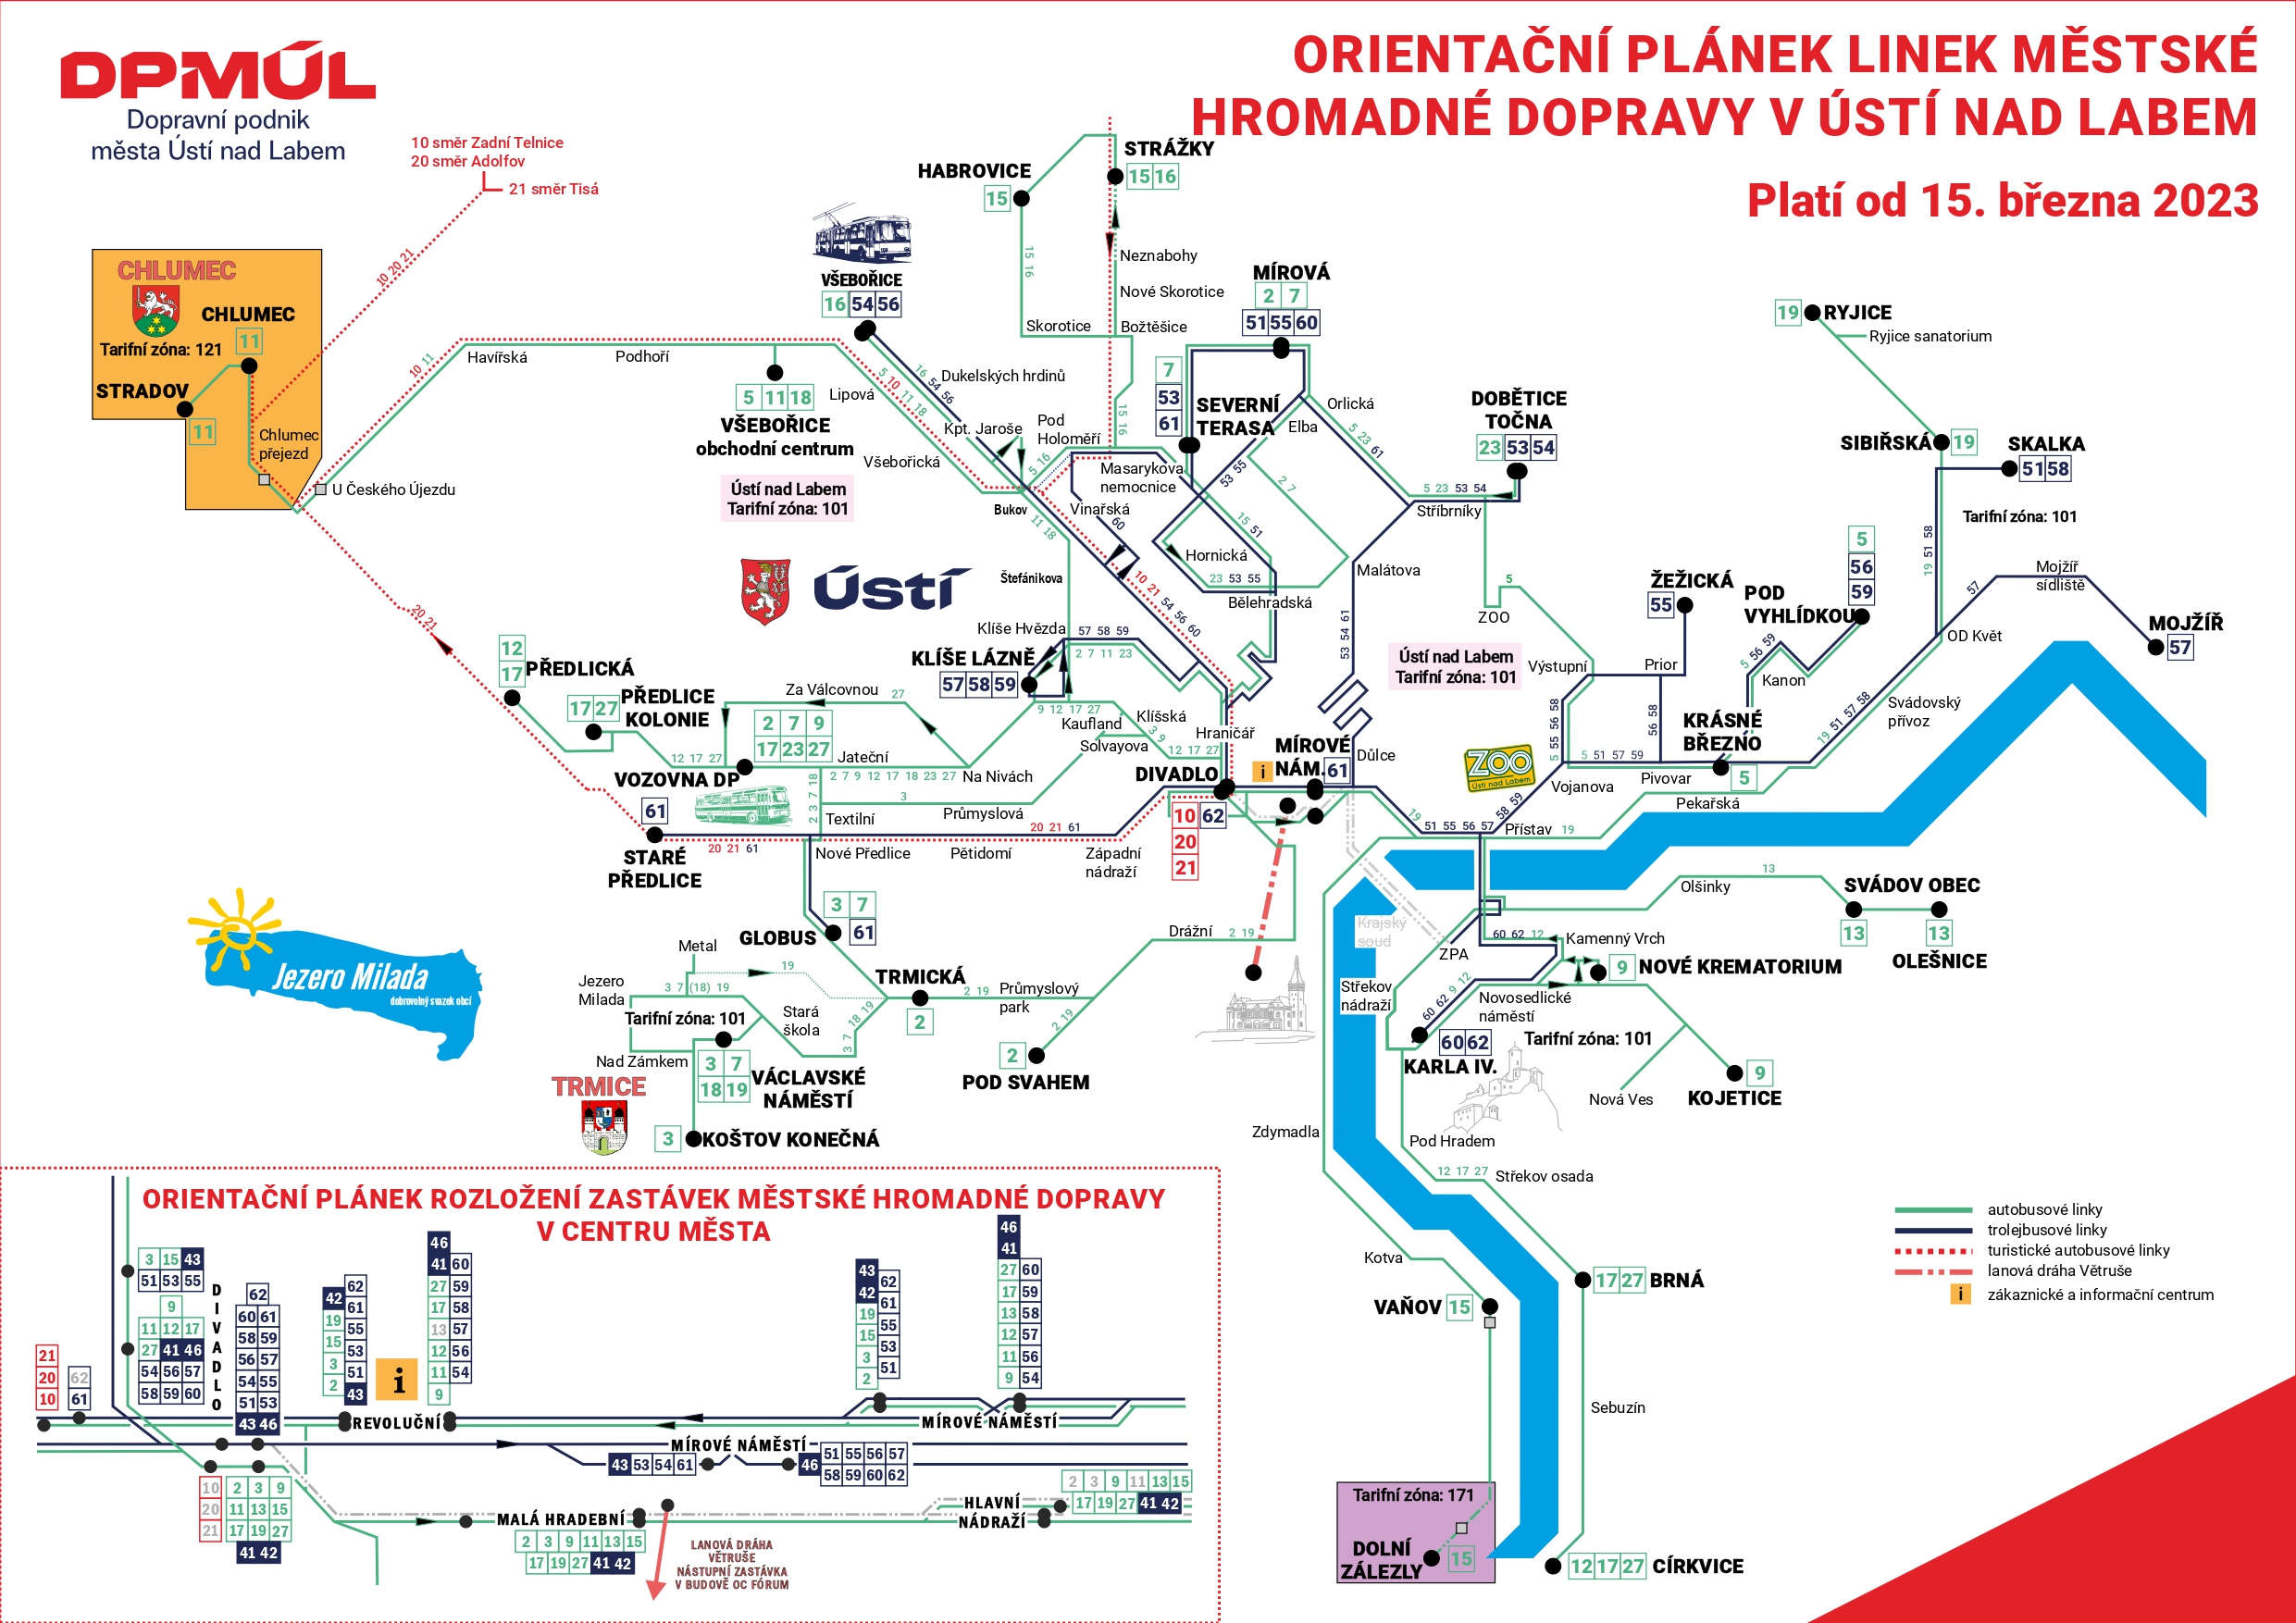 Mapa městské hromadné dopravy v Ústí nad Labem - Detailní plán s jednotlivými trasami a zastávkami